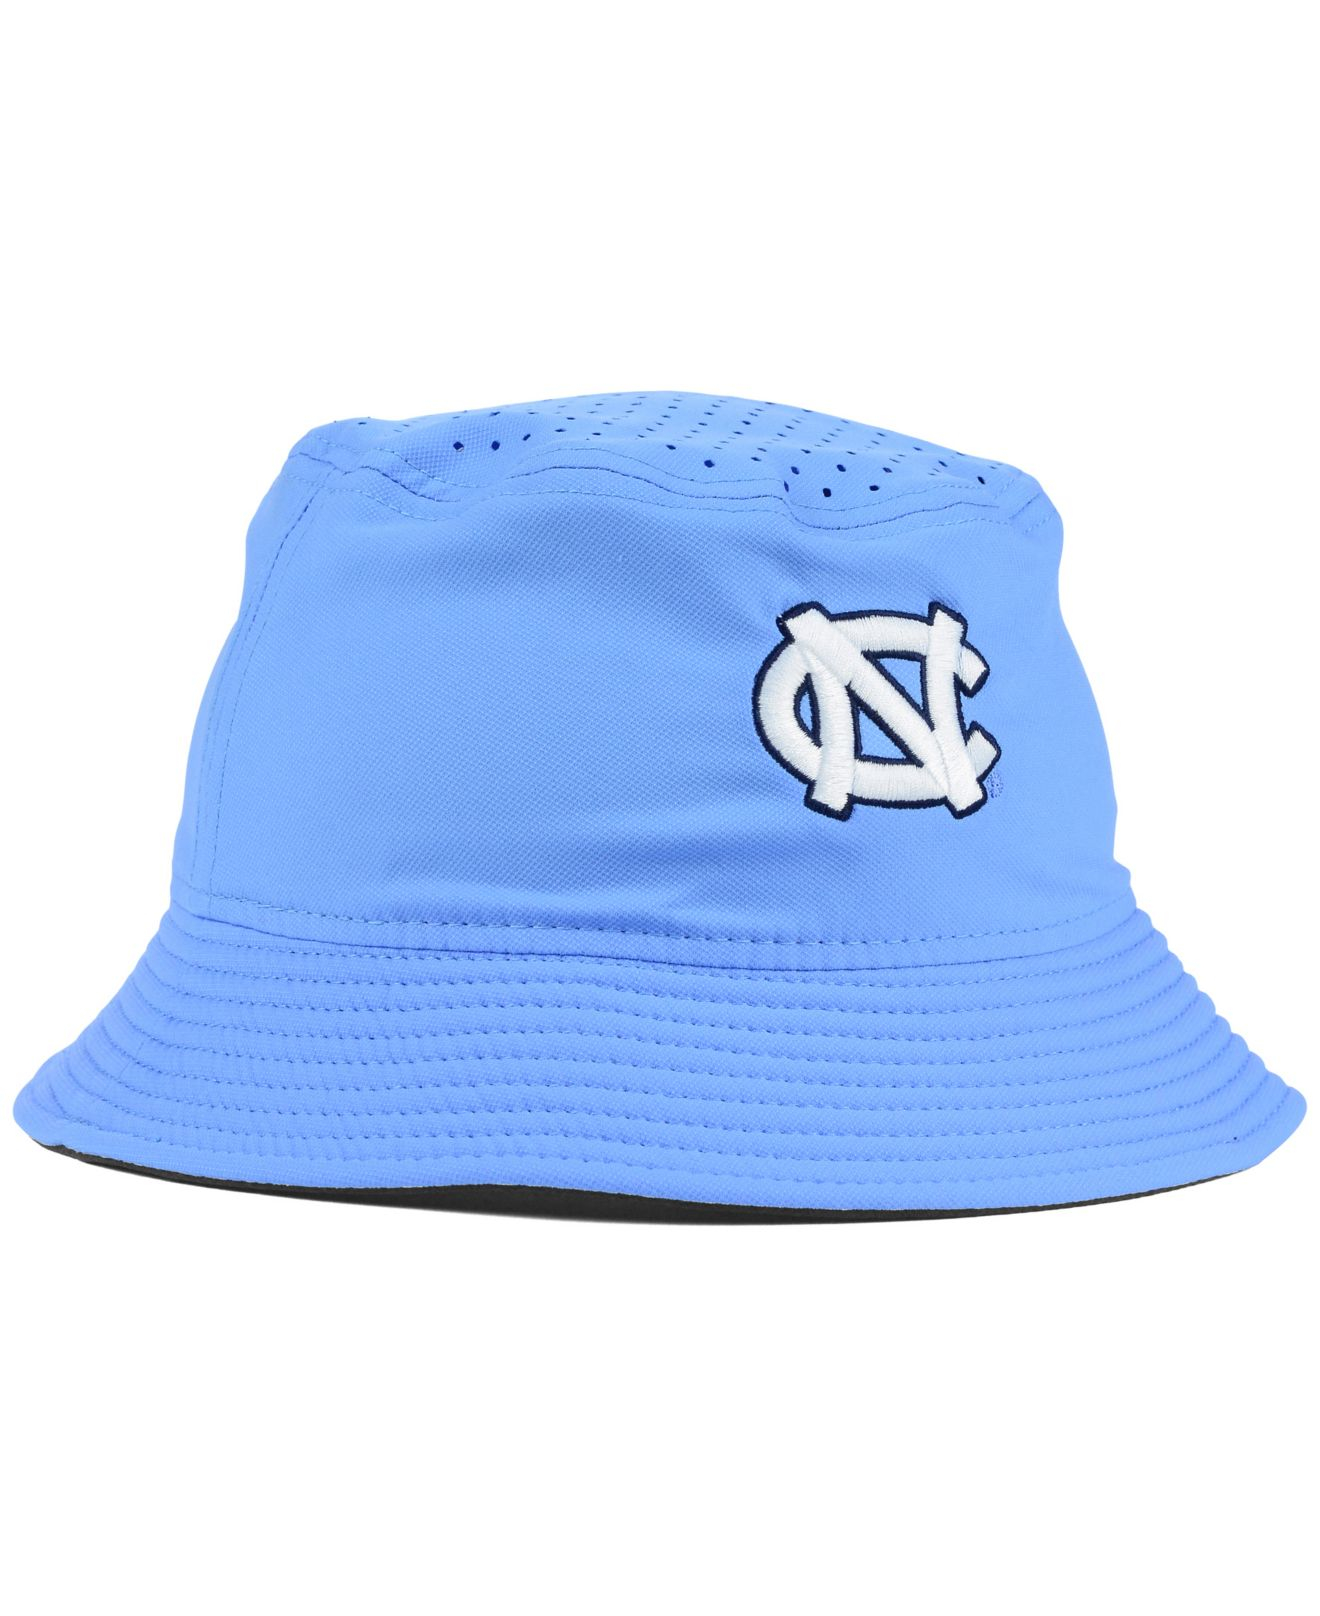 Nike North Carolina Tar Heels Vapor Bucket Hat in Blue for Men - Lyst